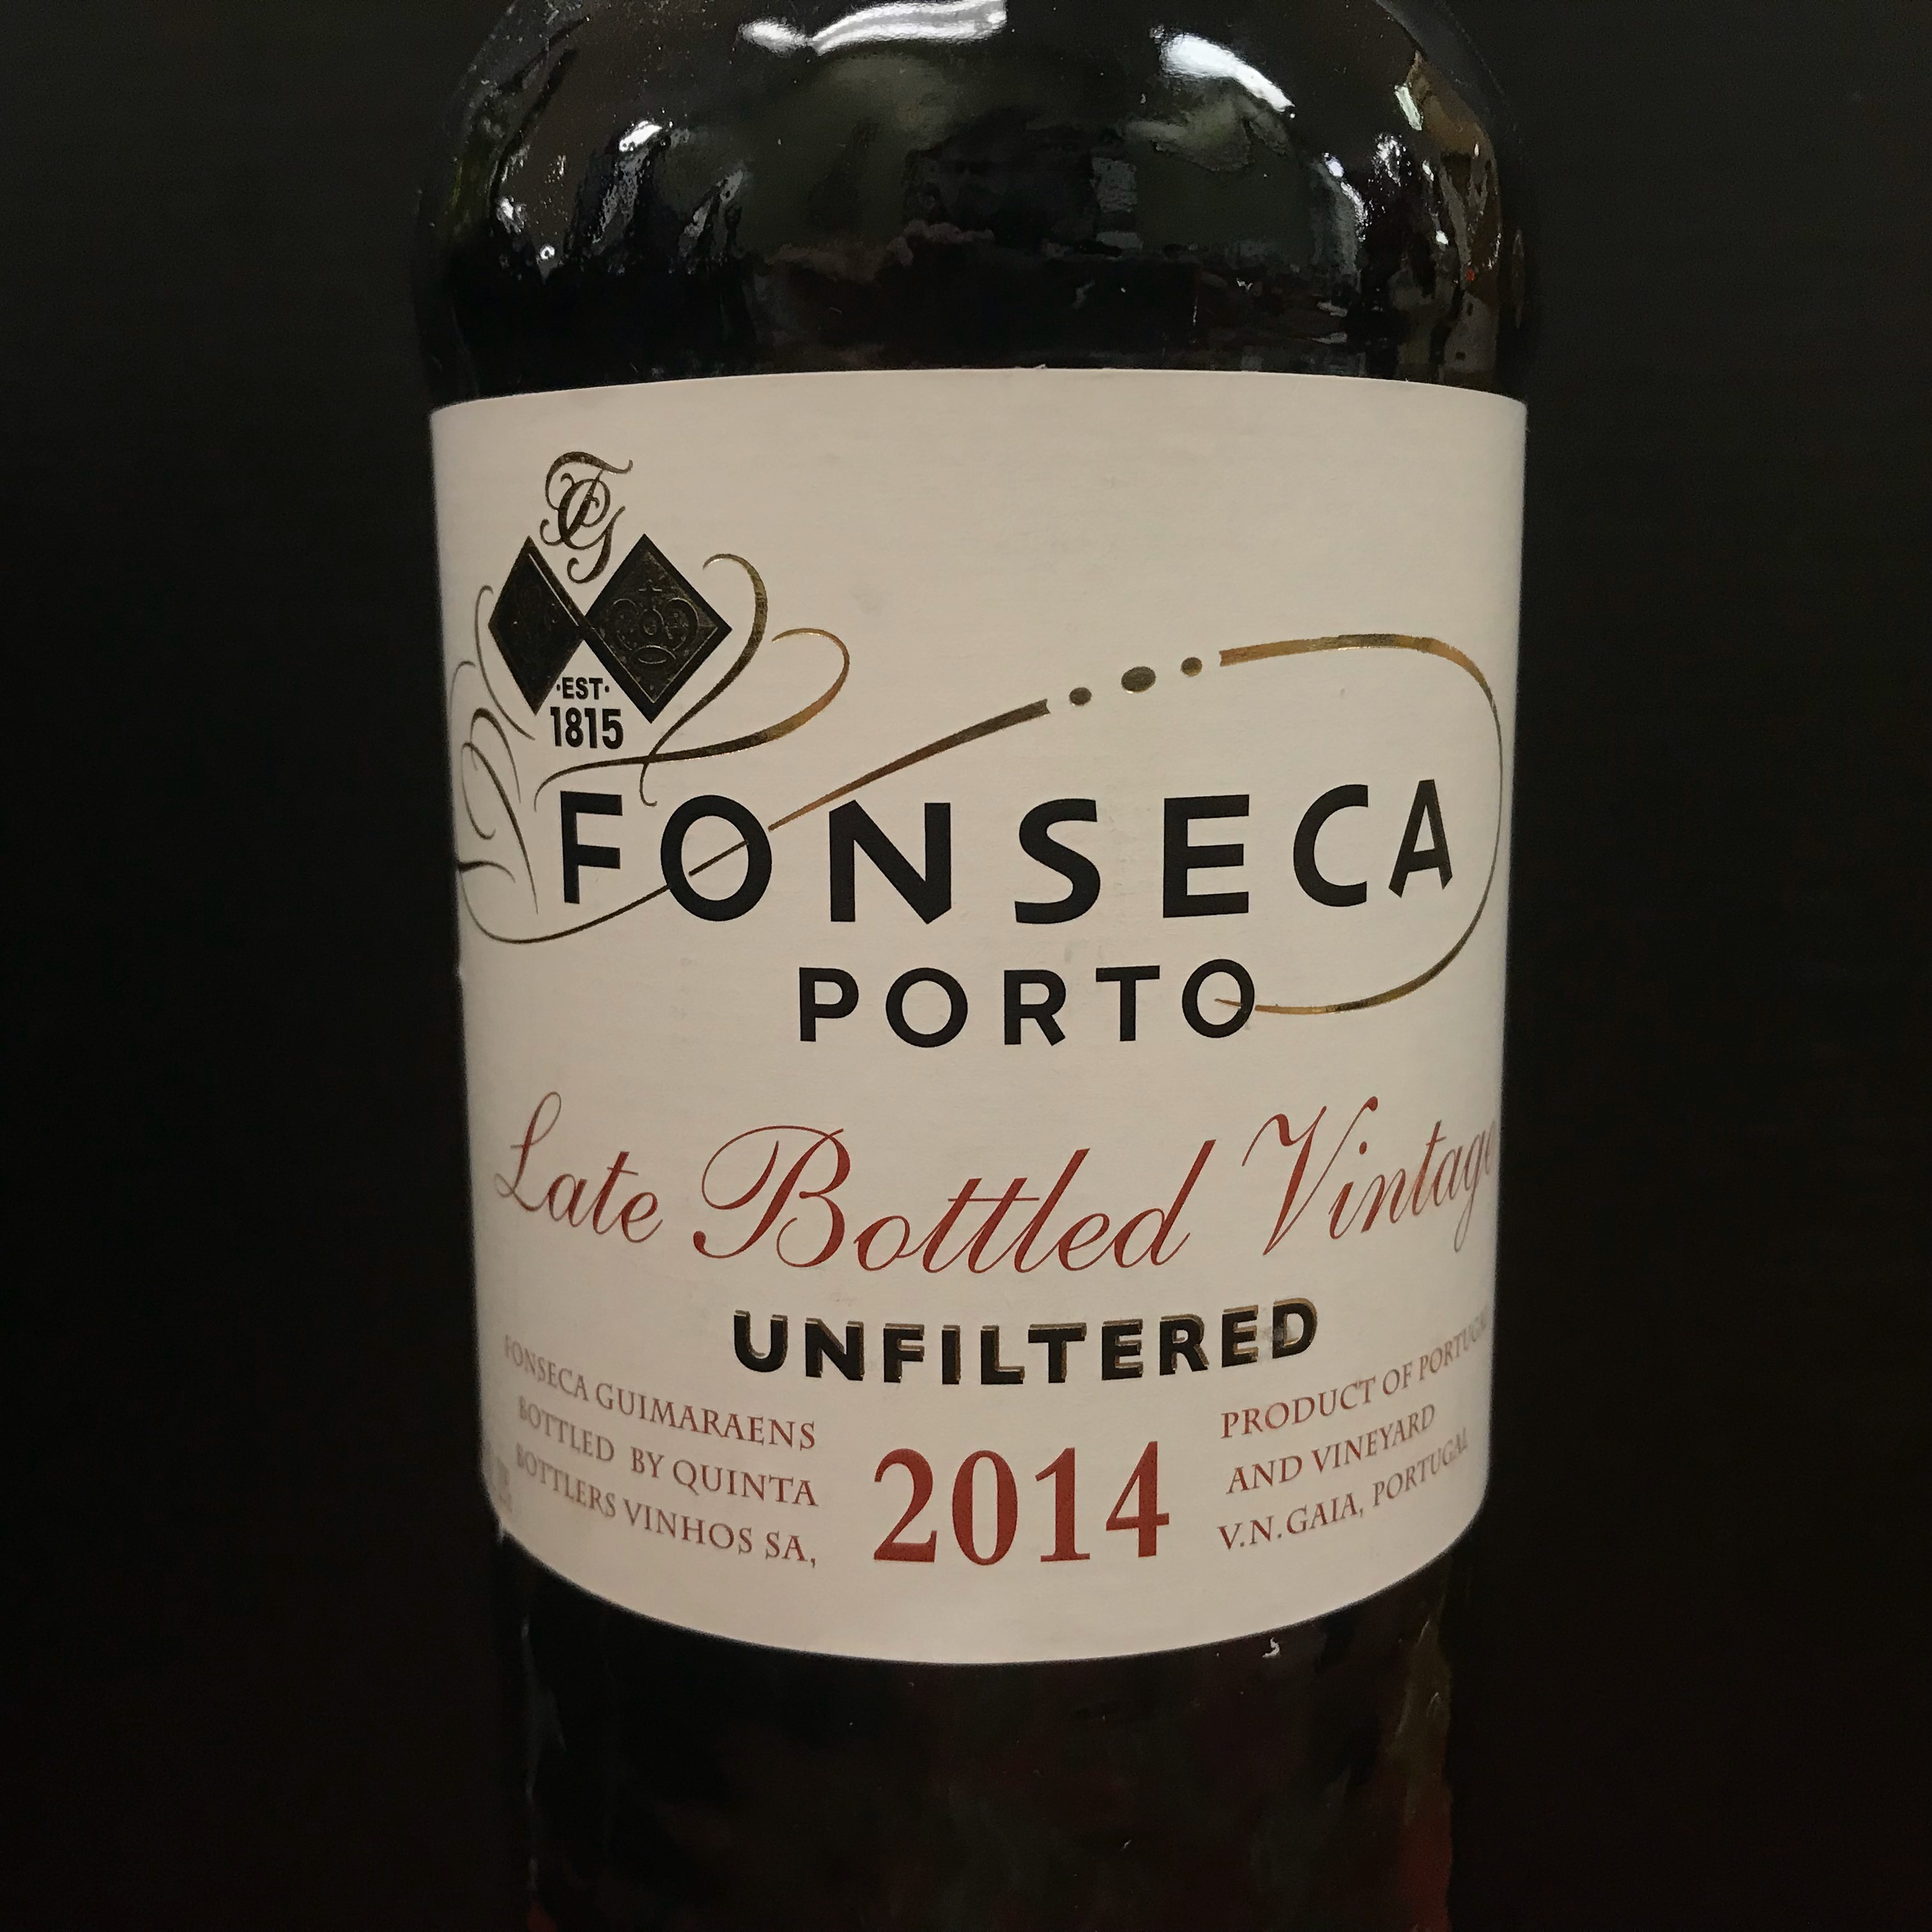 Fonseca Late Bottle Vintage Unfiltered Port 2016